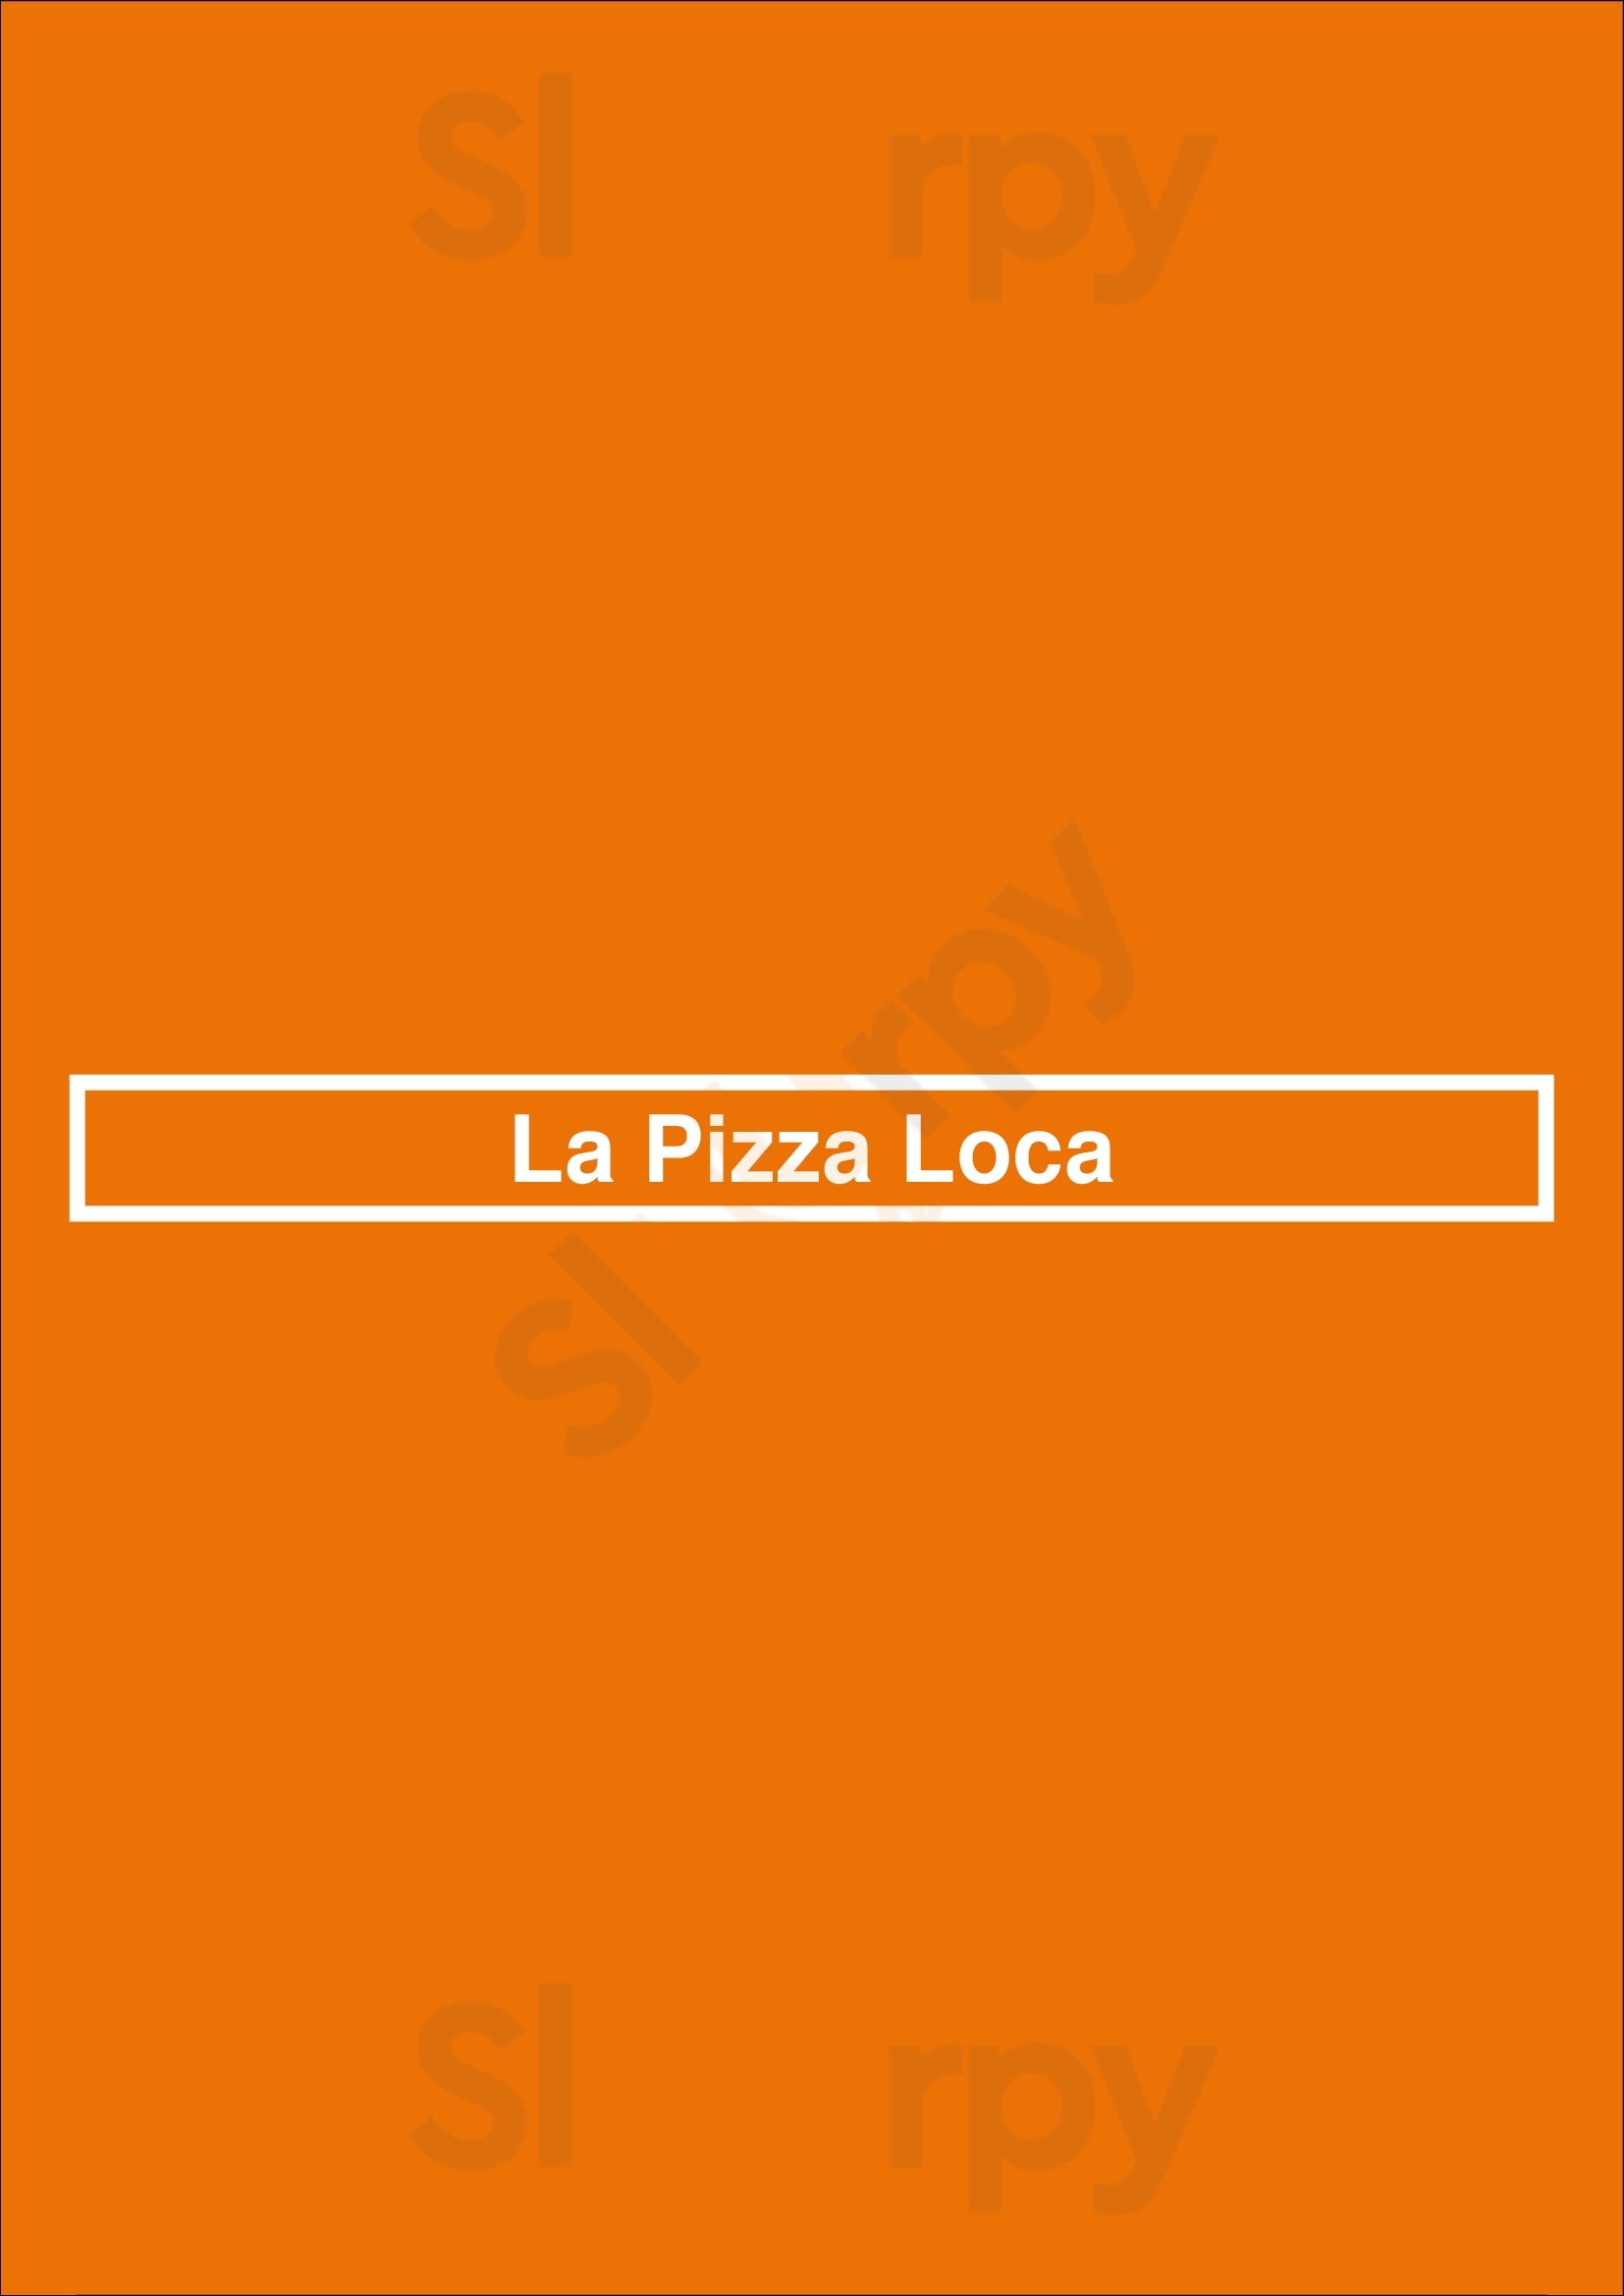 La Pizza Loca Los Angeles Menu - 1